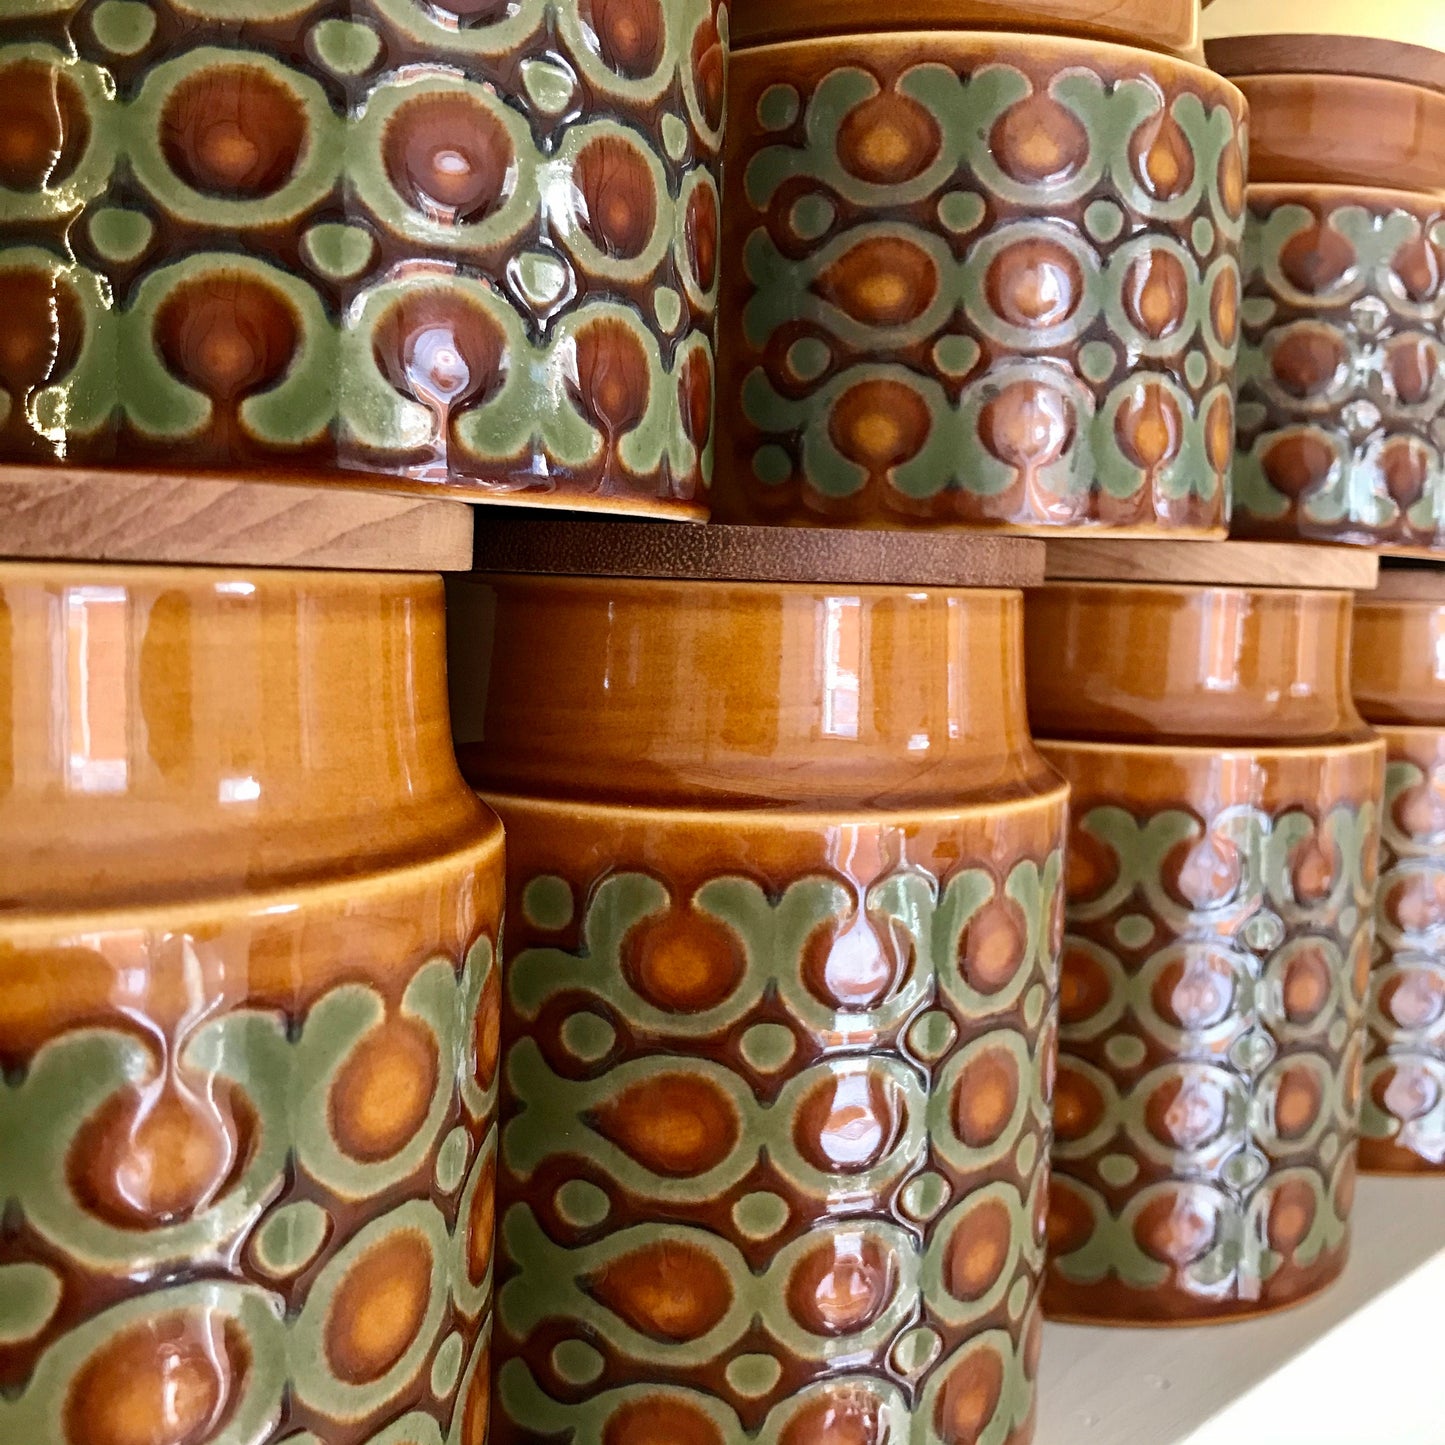 Hornsea Bronte storage jars